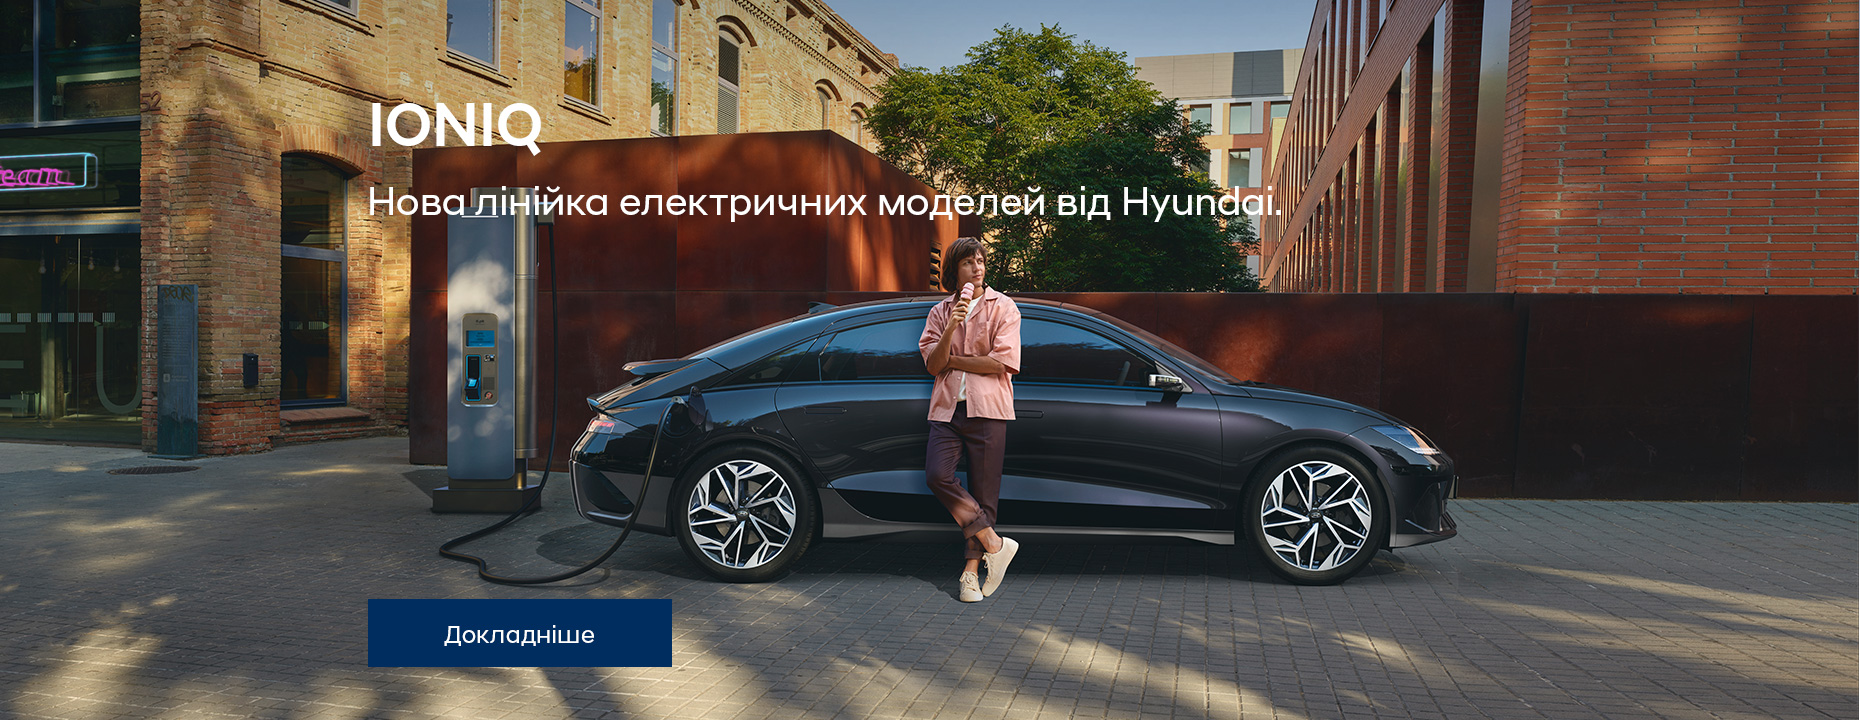 Автомобілі Hyundai м. Одеса | Купити новий Хюндай | Автотрейдінг Одеса ДП - фото 28